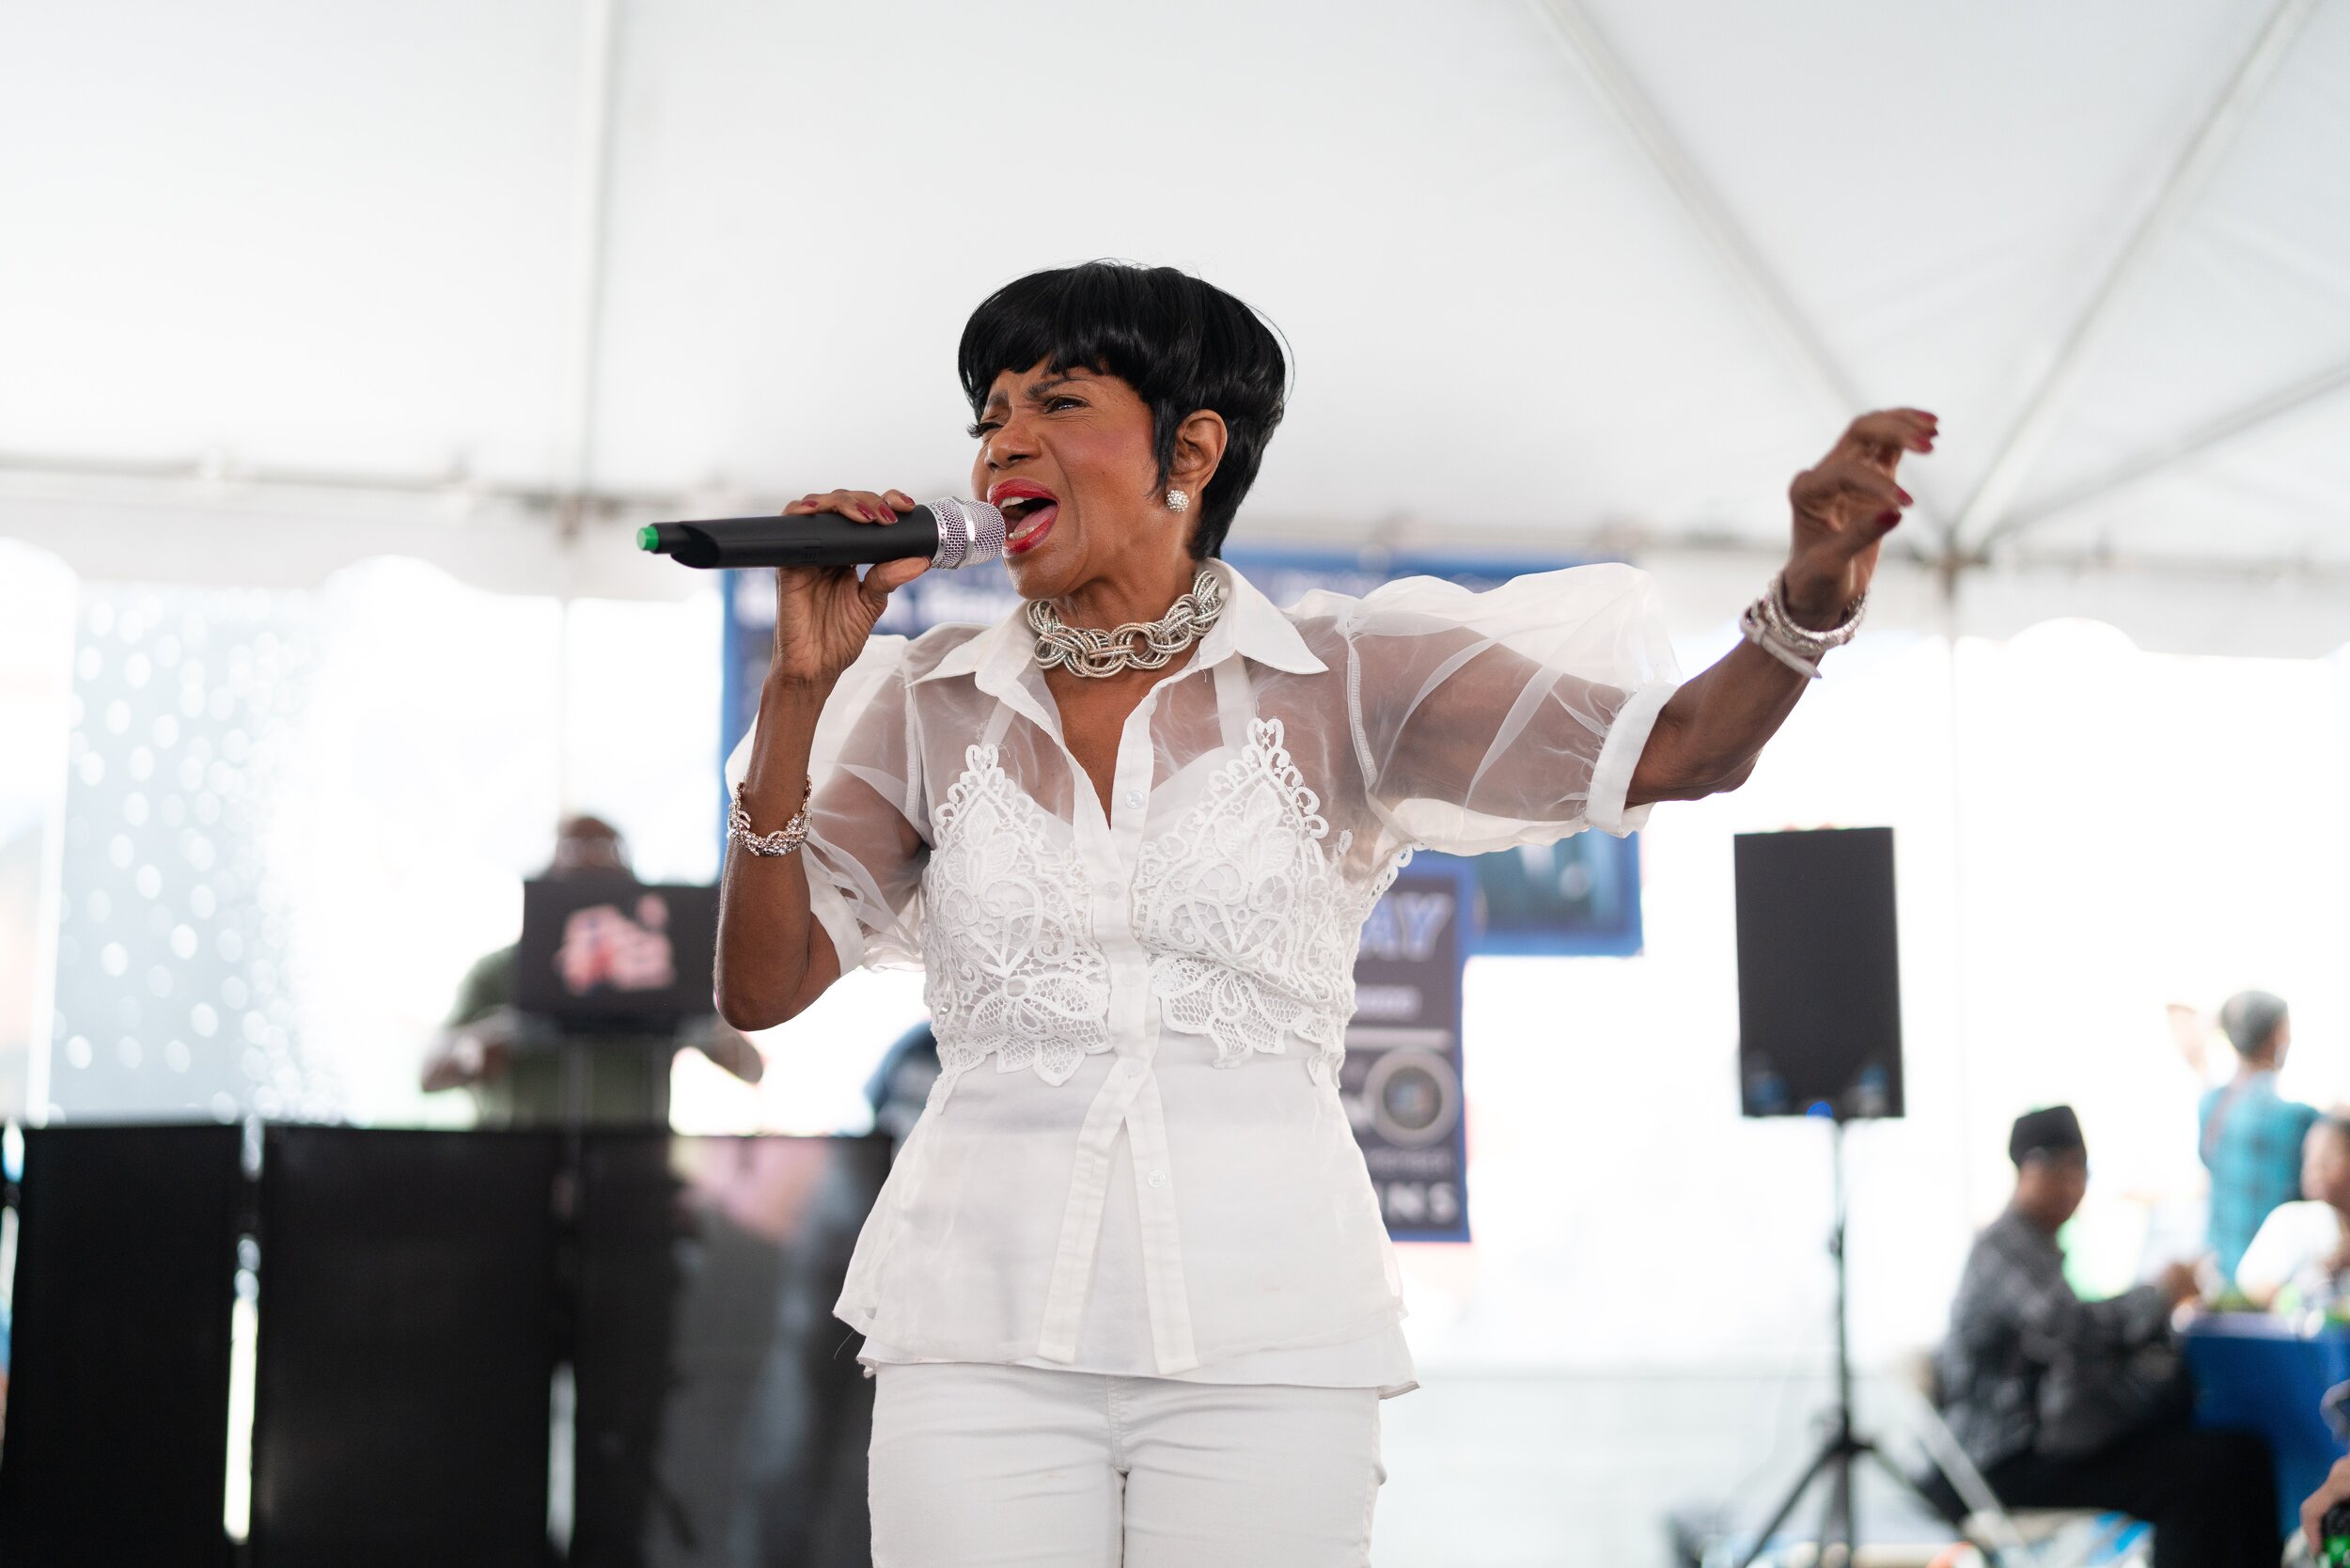   Harlem-born singer Melba Moore performing at Senior Day 2019.&nbsp;  